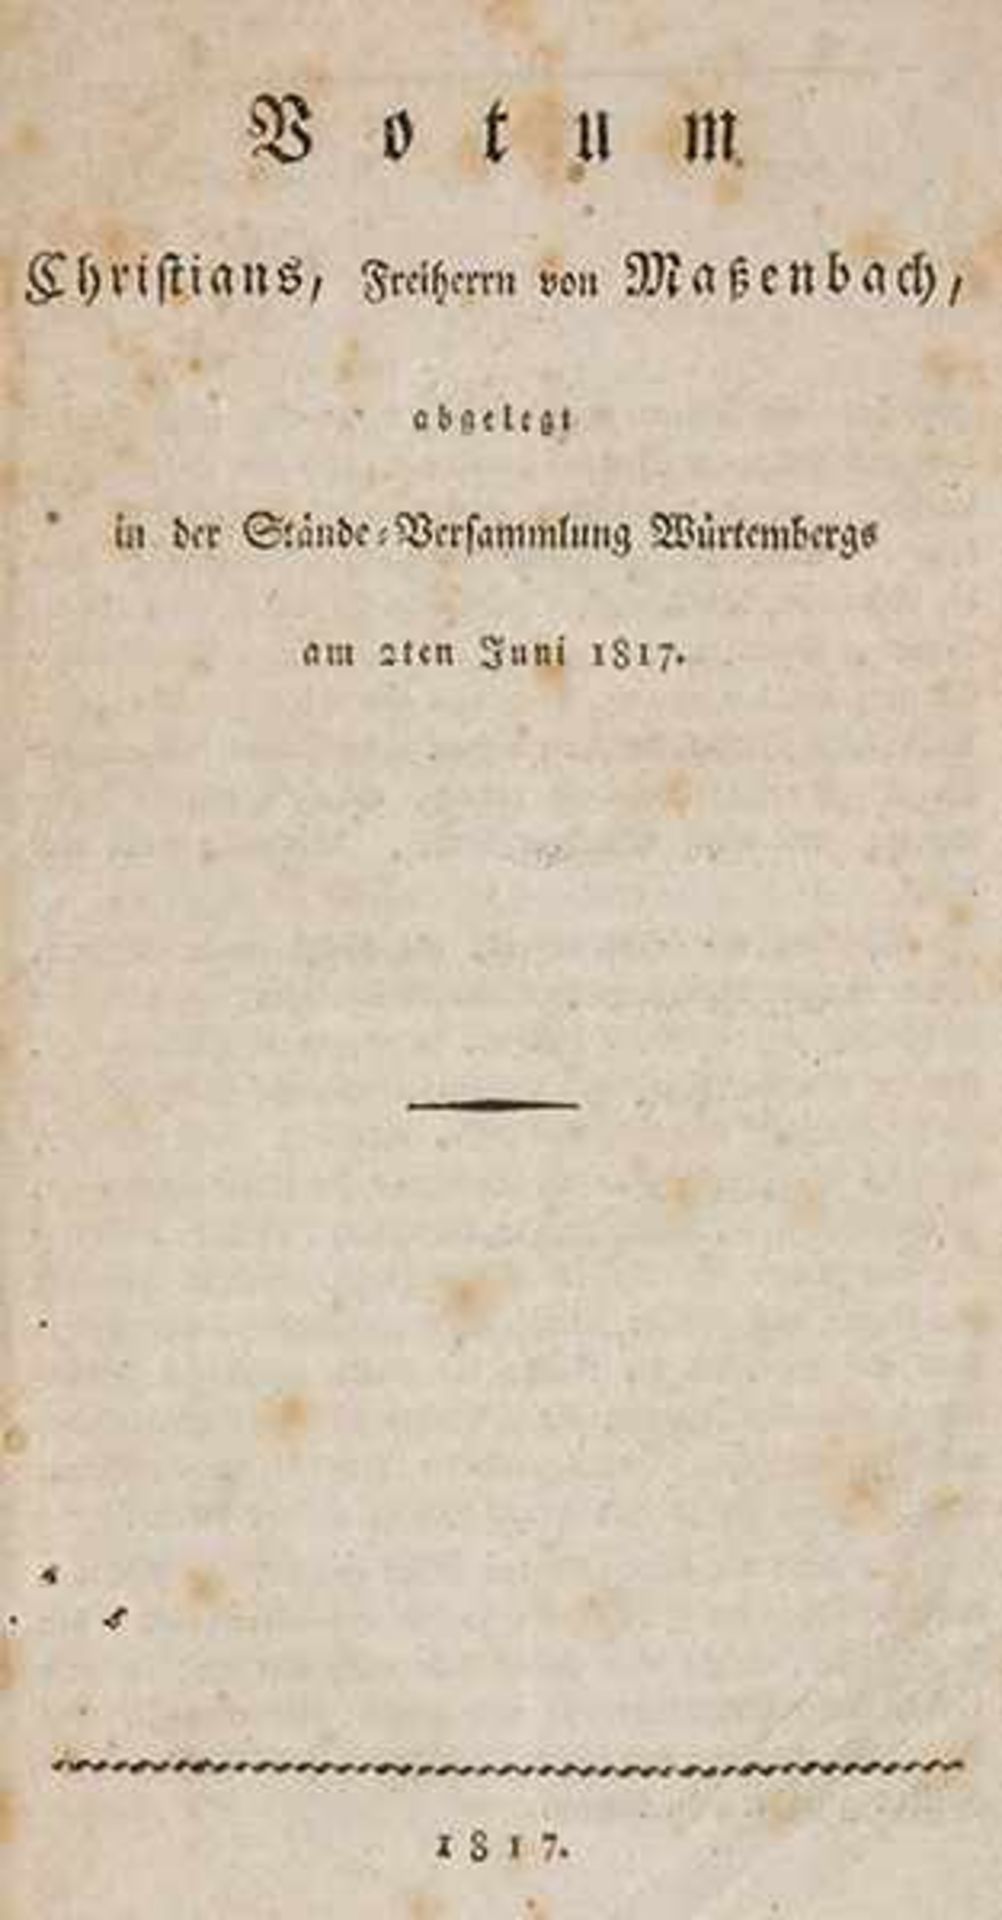 Staatswissenschaft - - Massenbach, Christian Karl August Ludwig von. Votum Christians, Freiherrn von